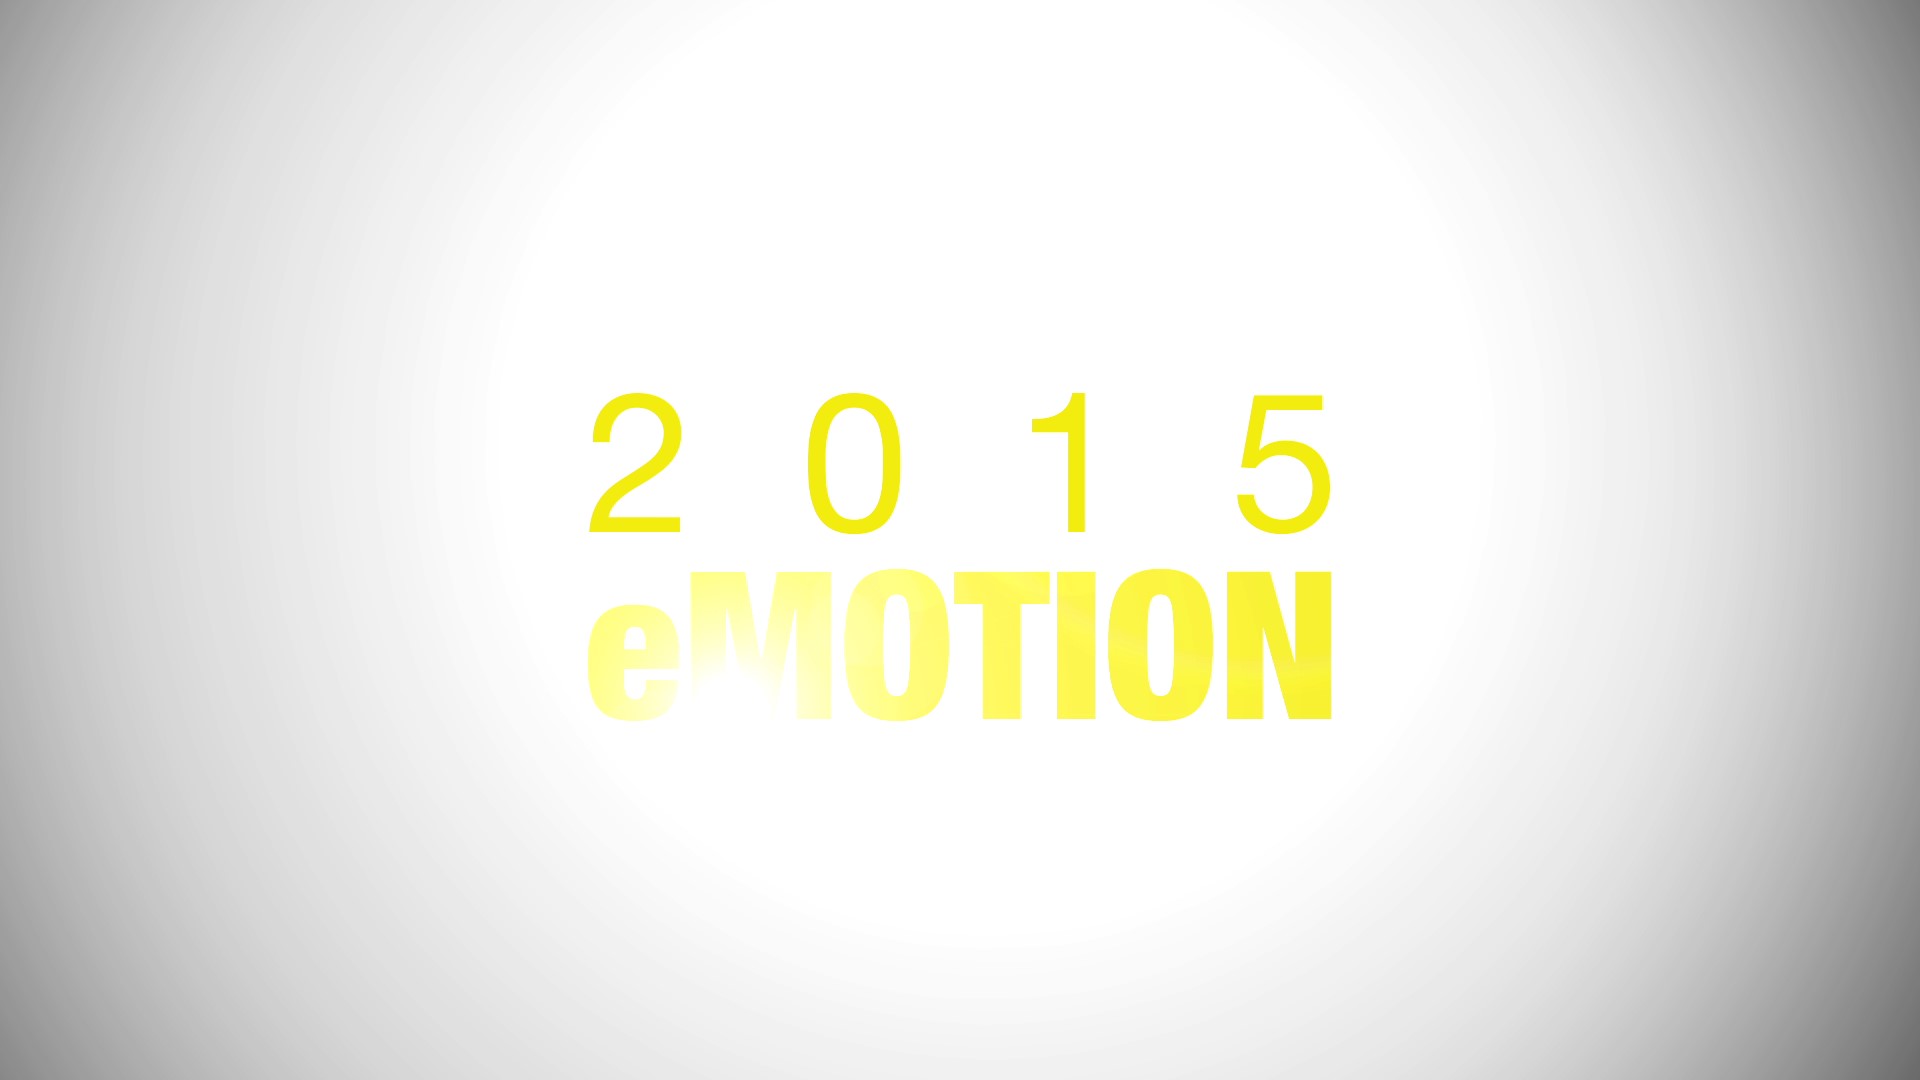 2015 eMotion